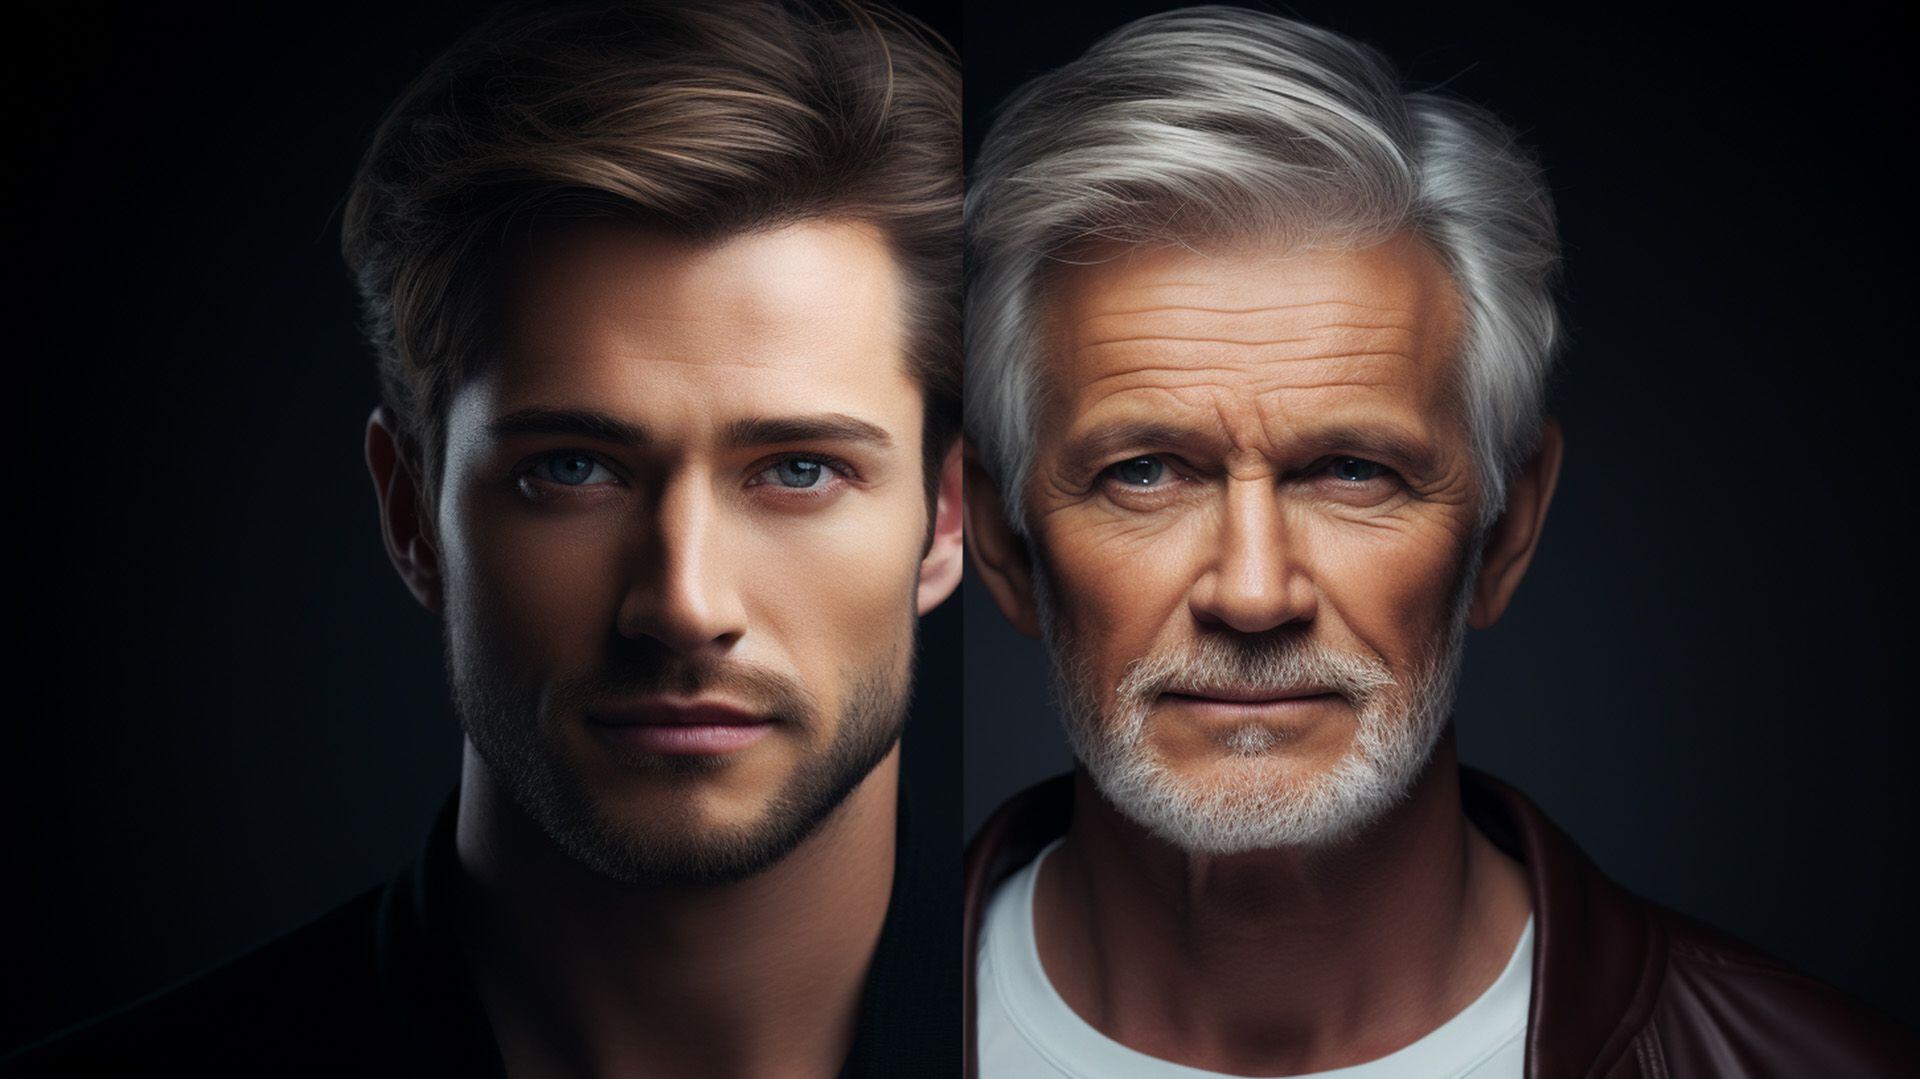 Primer plano de rostros, uno con signos visibles de envejecimiento y otro notablemente más joven, destacando el contraste y la eficacia de los tratamientos anti-envejecimiento.